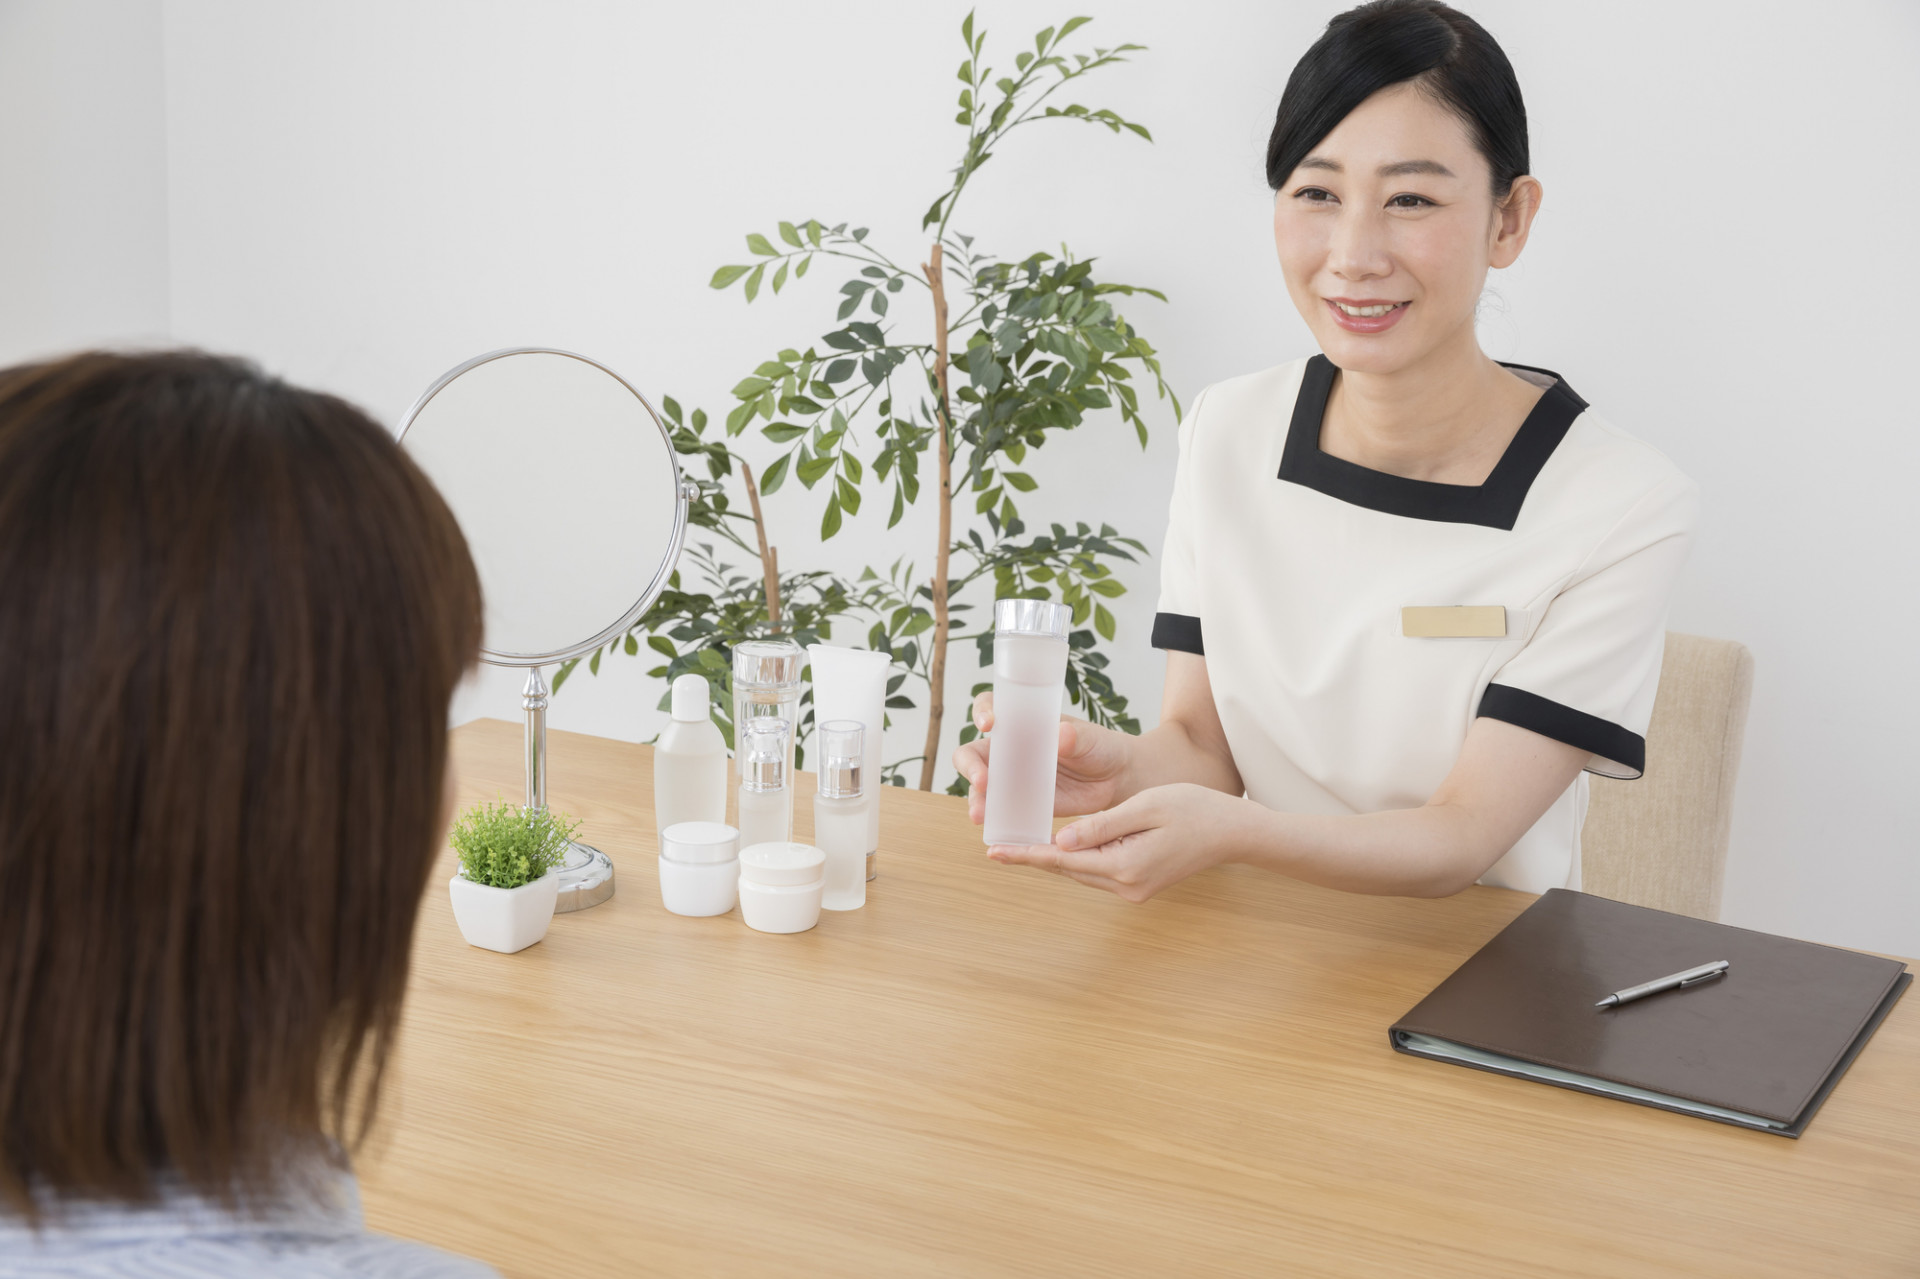 東京の百貨店で美容部員経験を積んだ講師の説得力ある指導